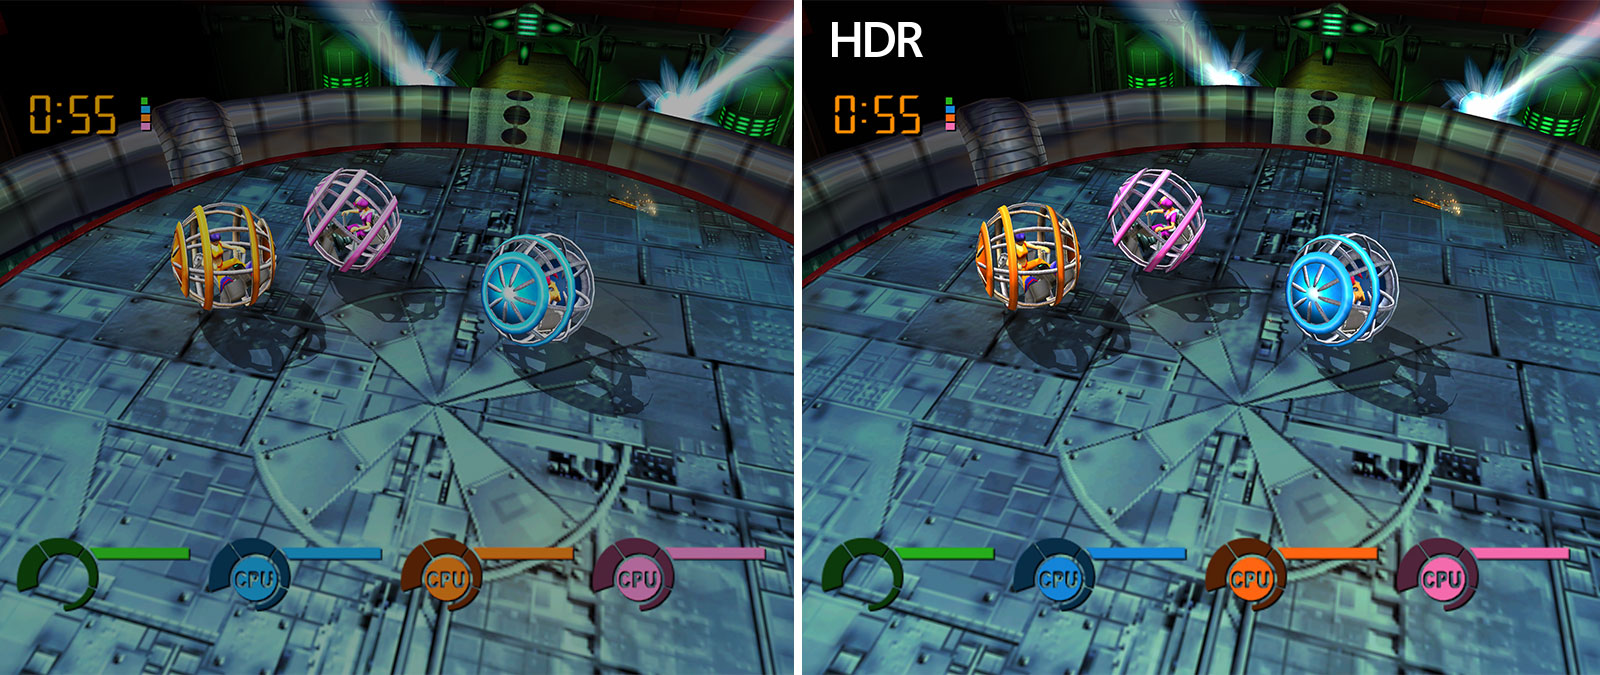 Összehasonlító képernyőképek a Fusion Frenzy játékból; a két kép egyikének jobb a fényereje az Automatikus HDR funkciónak köszönhetően